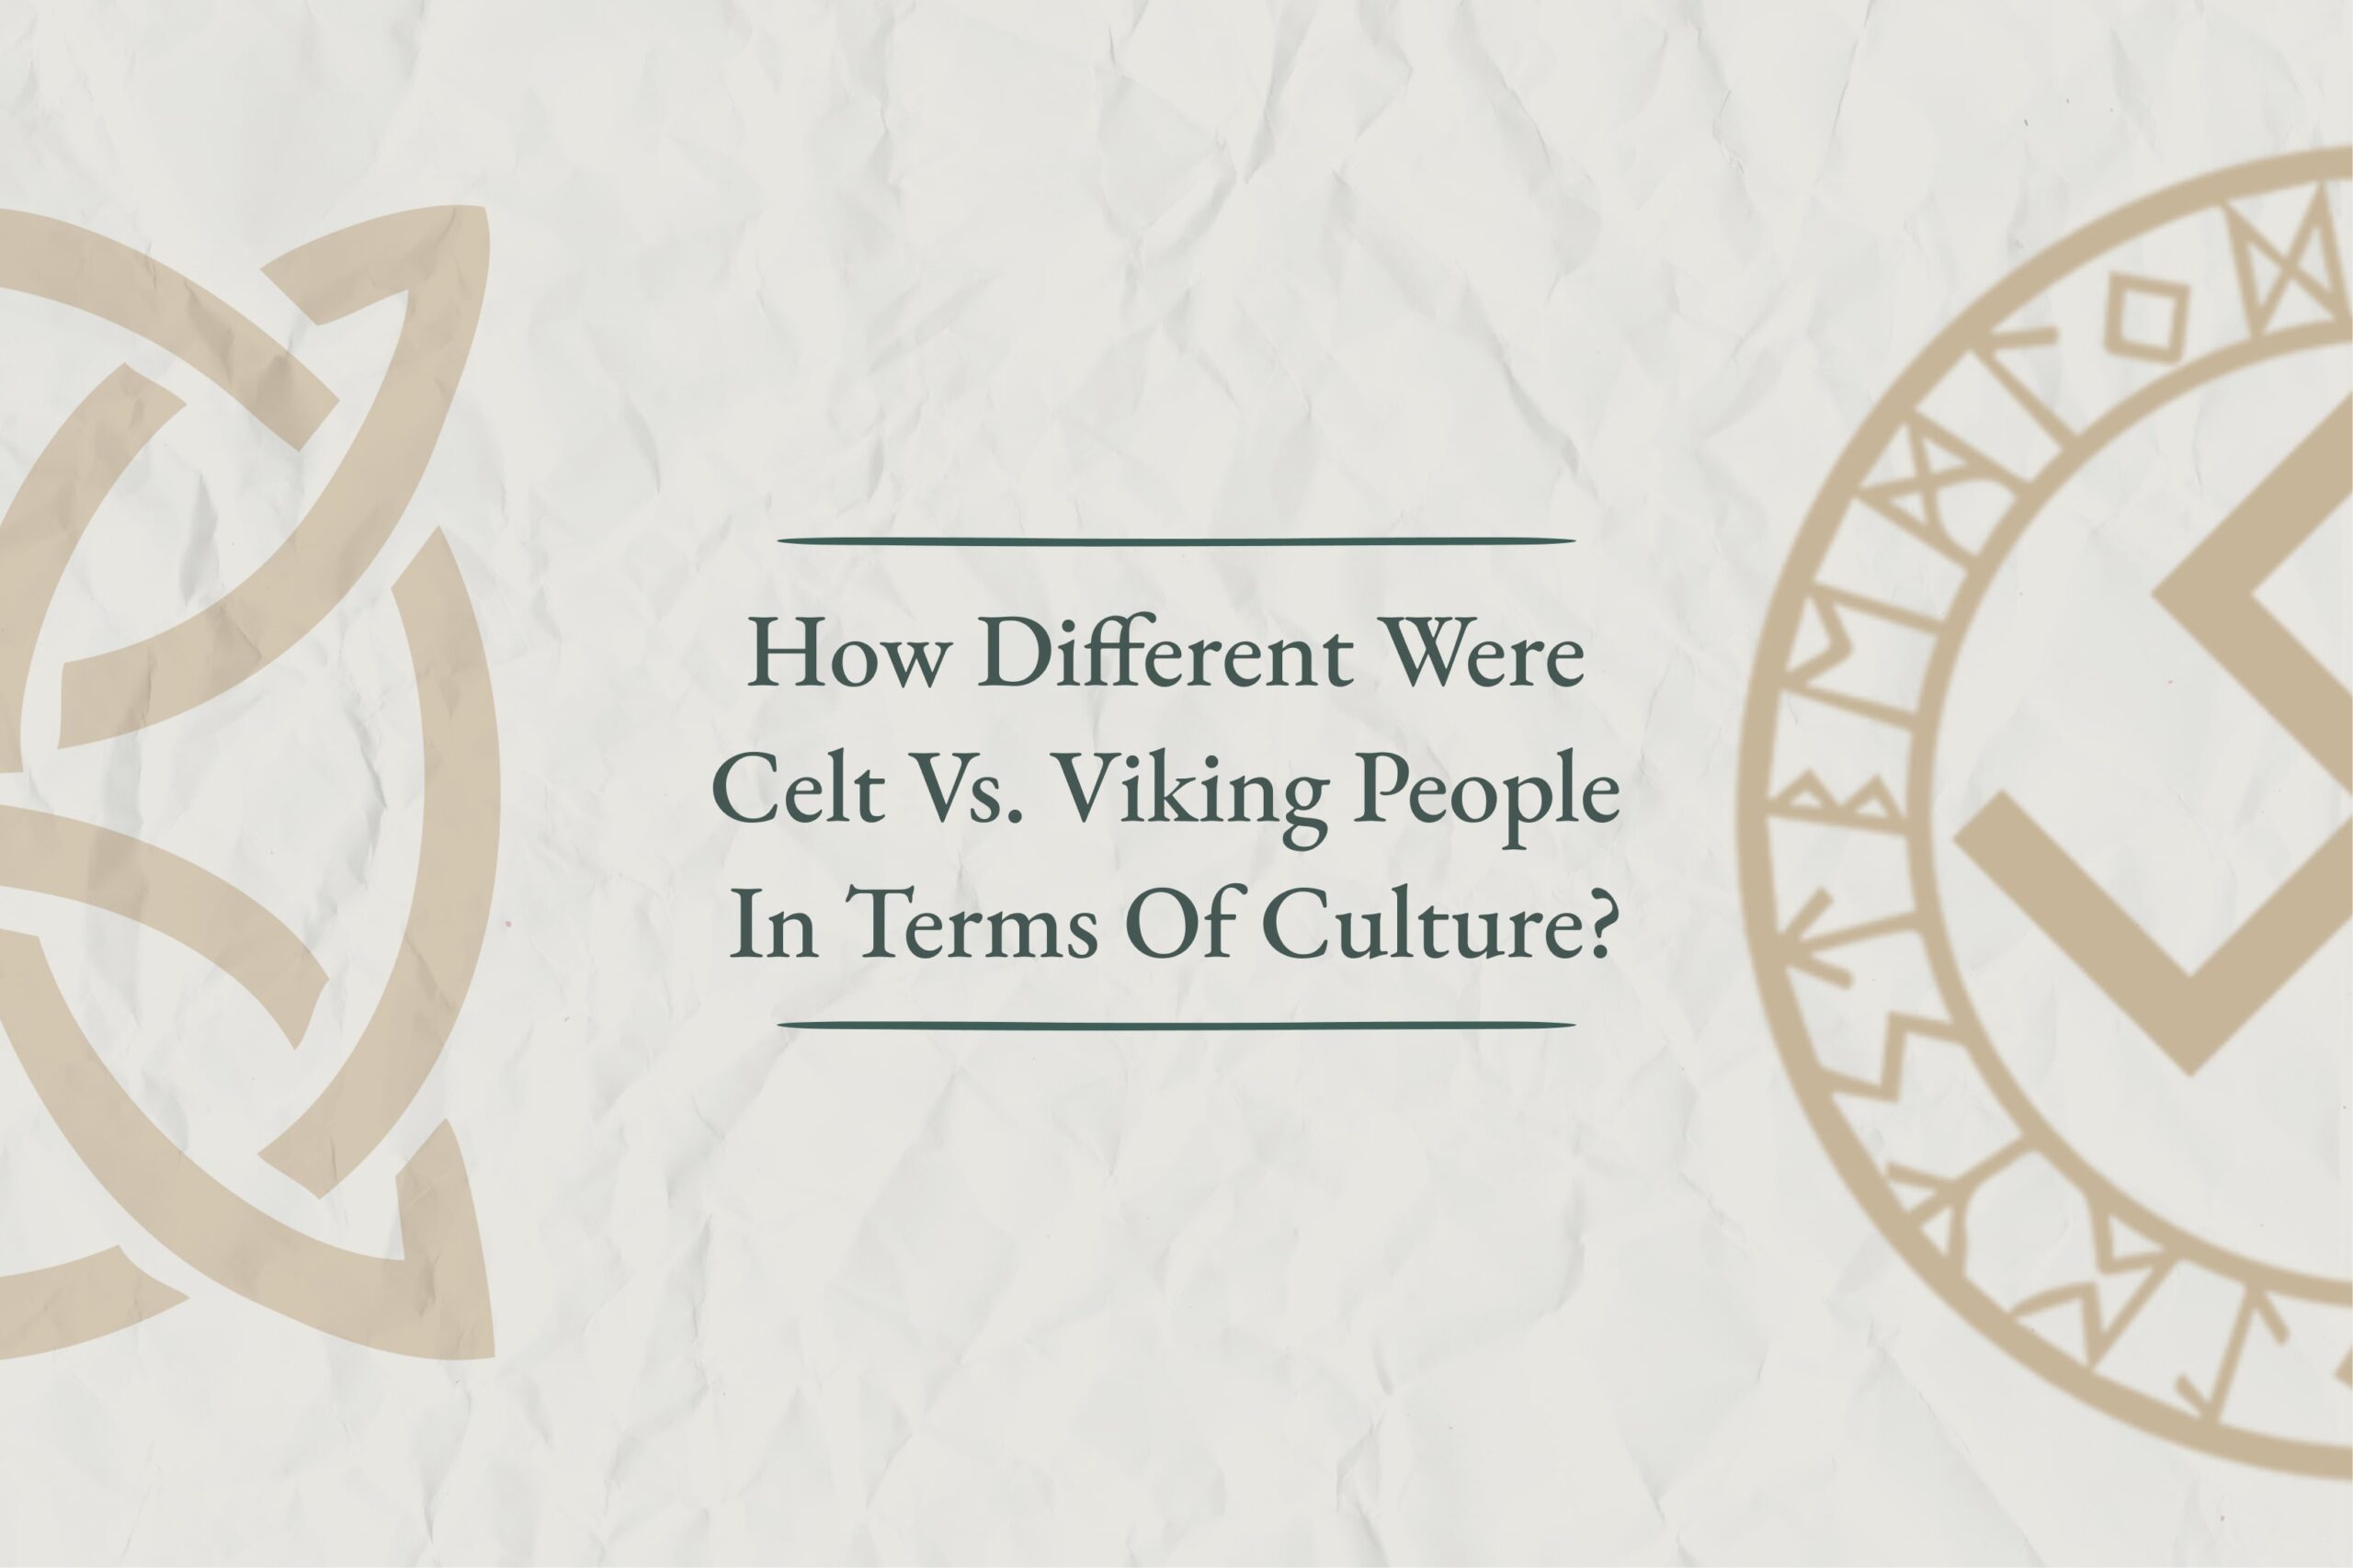 Celts vs Vikings